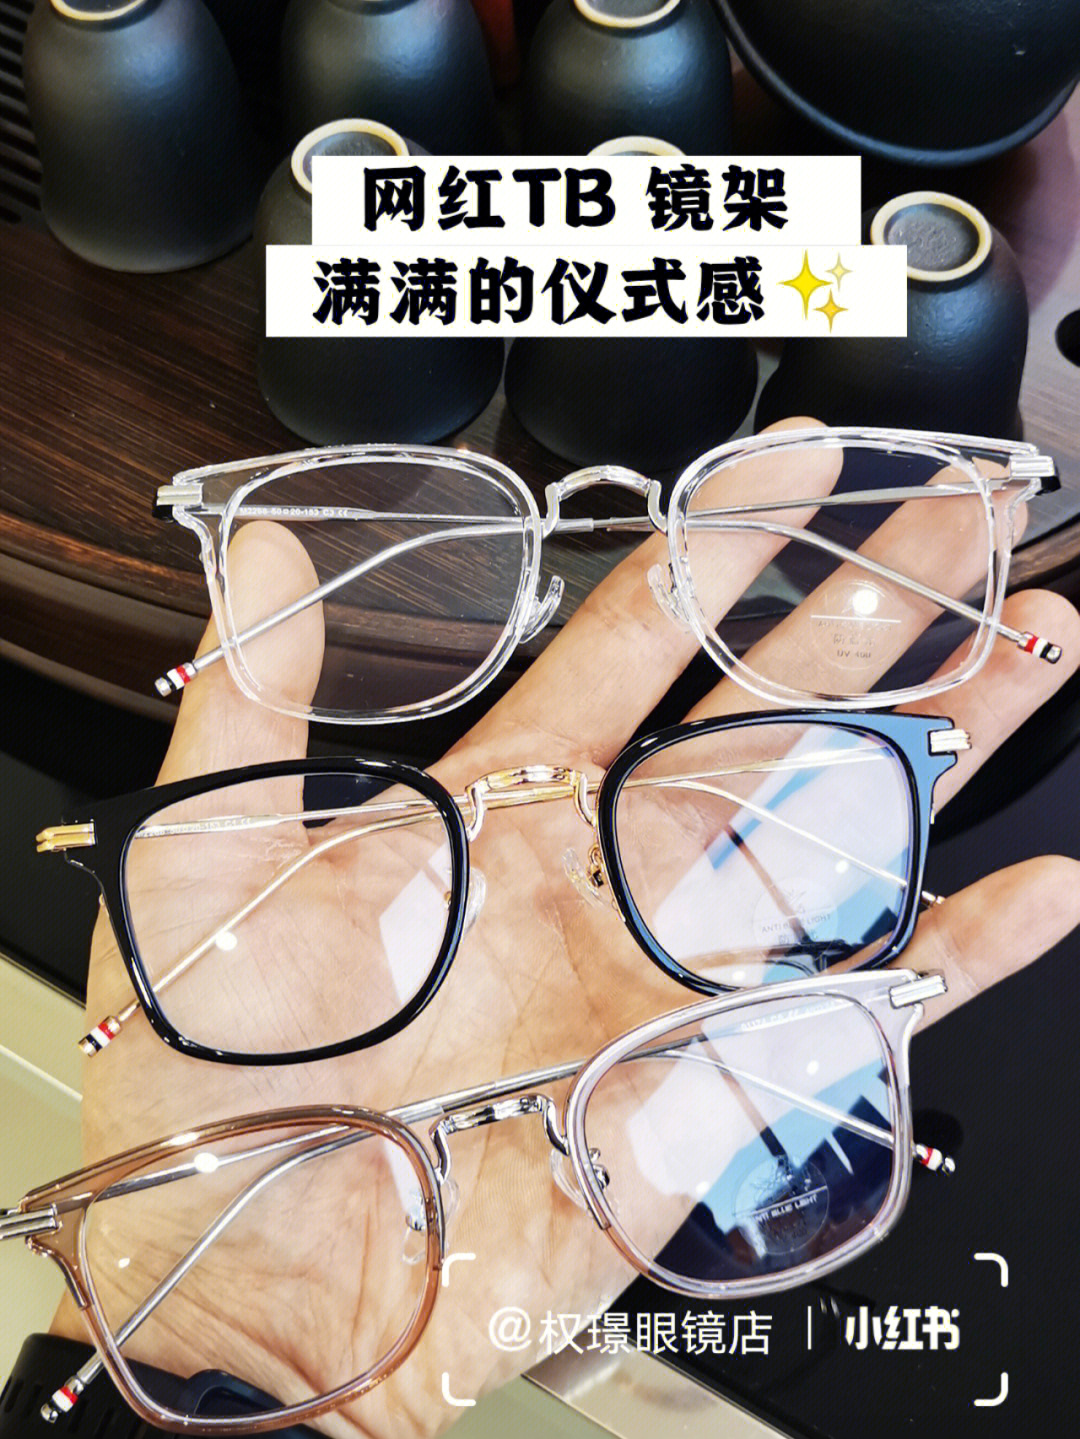 中国眼镜网_中国眼镜网_中国眼镜网